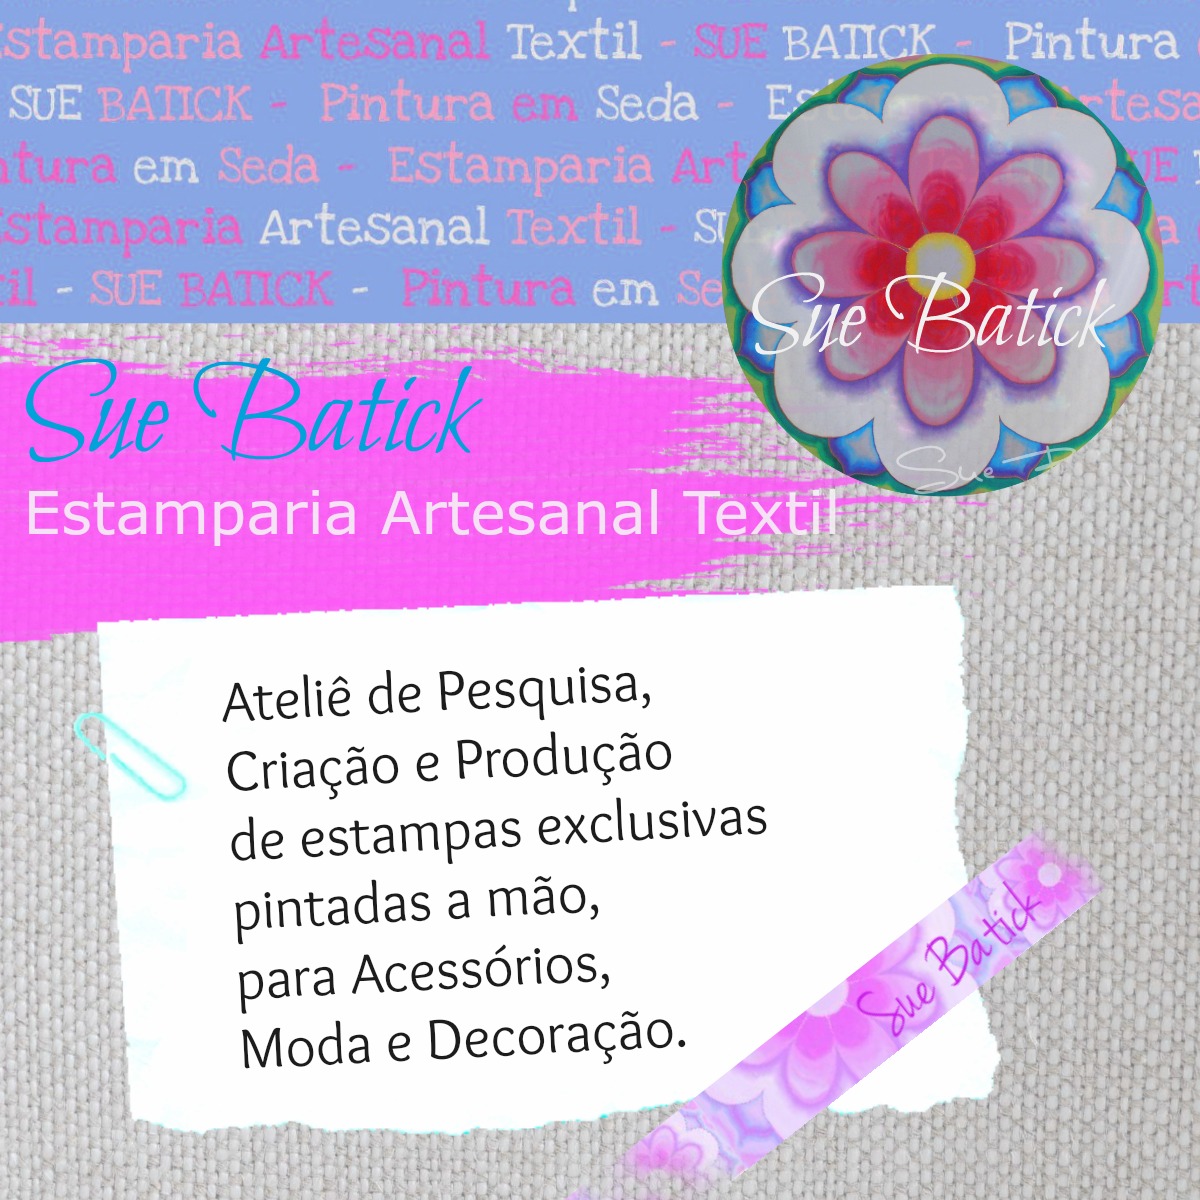 Sue Batick-Estamparia Artesanal Textil